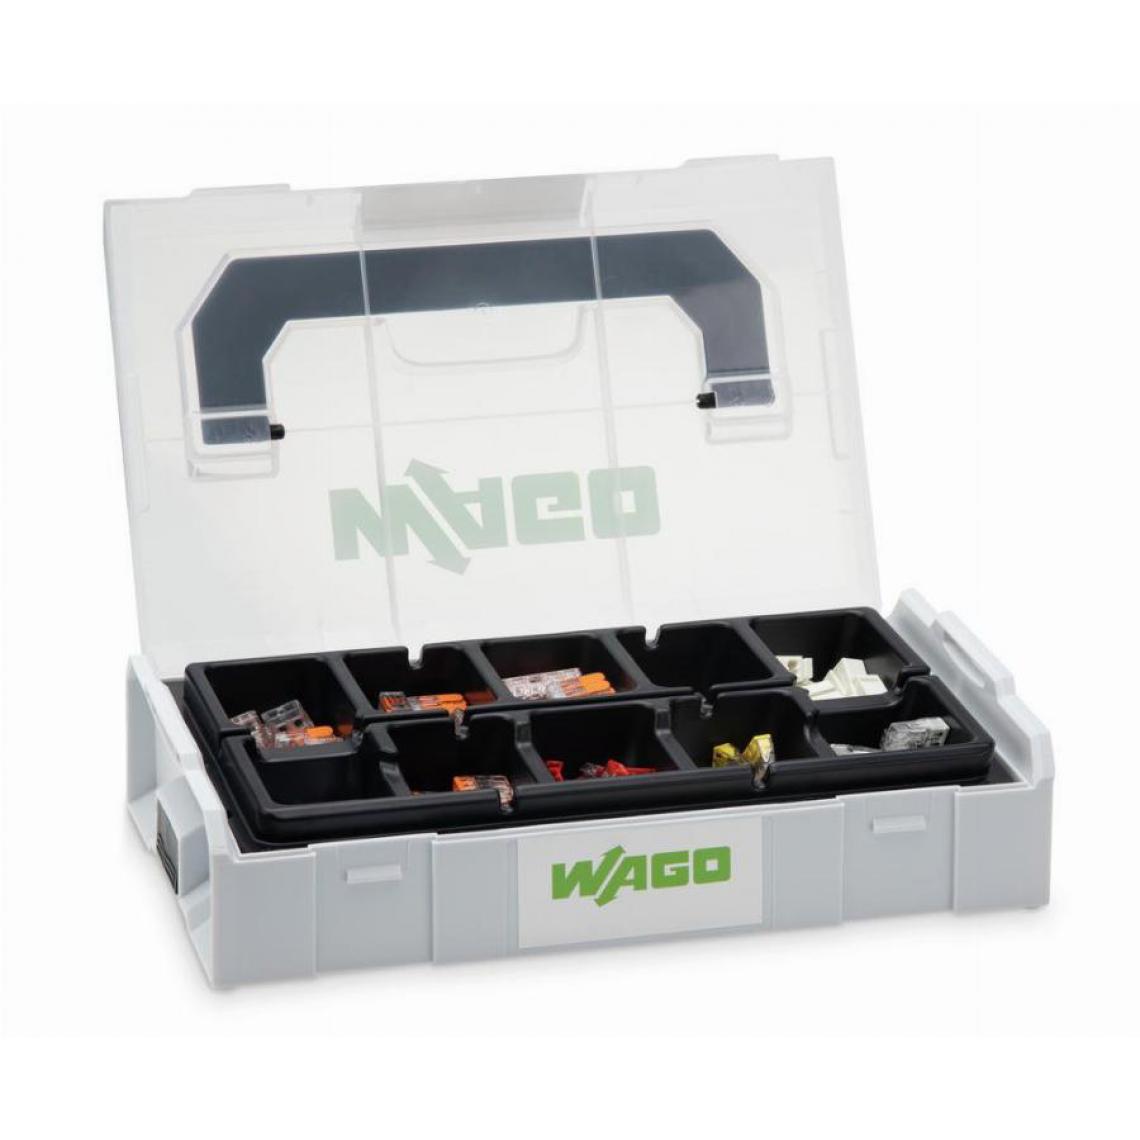 Wago - Kit WAGO L-Boxx micro avec bornes séries 2273, 221 & 224 - 887-960 - Interrupteurs et prises en saillie